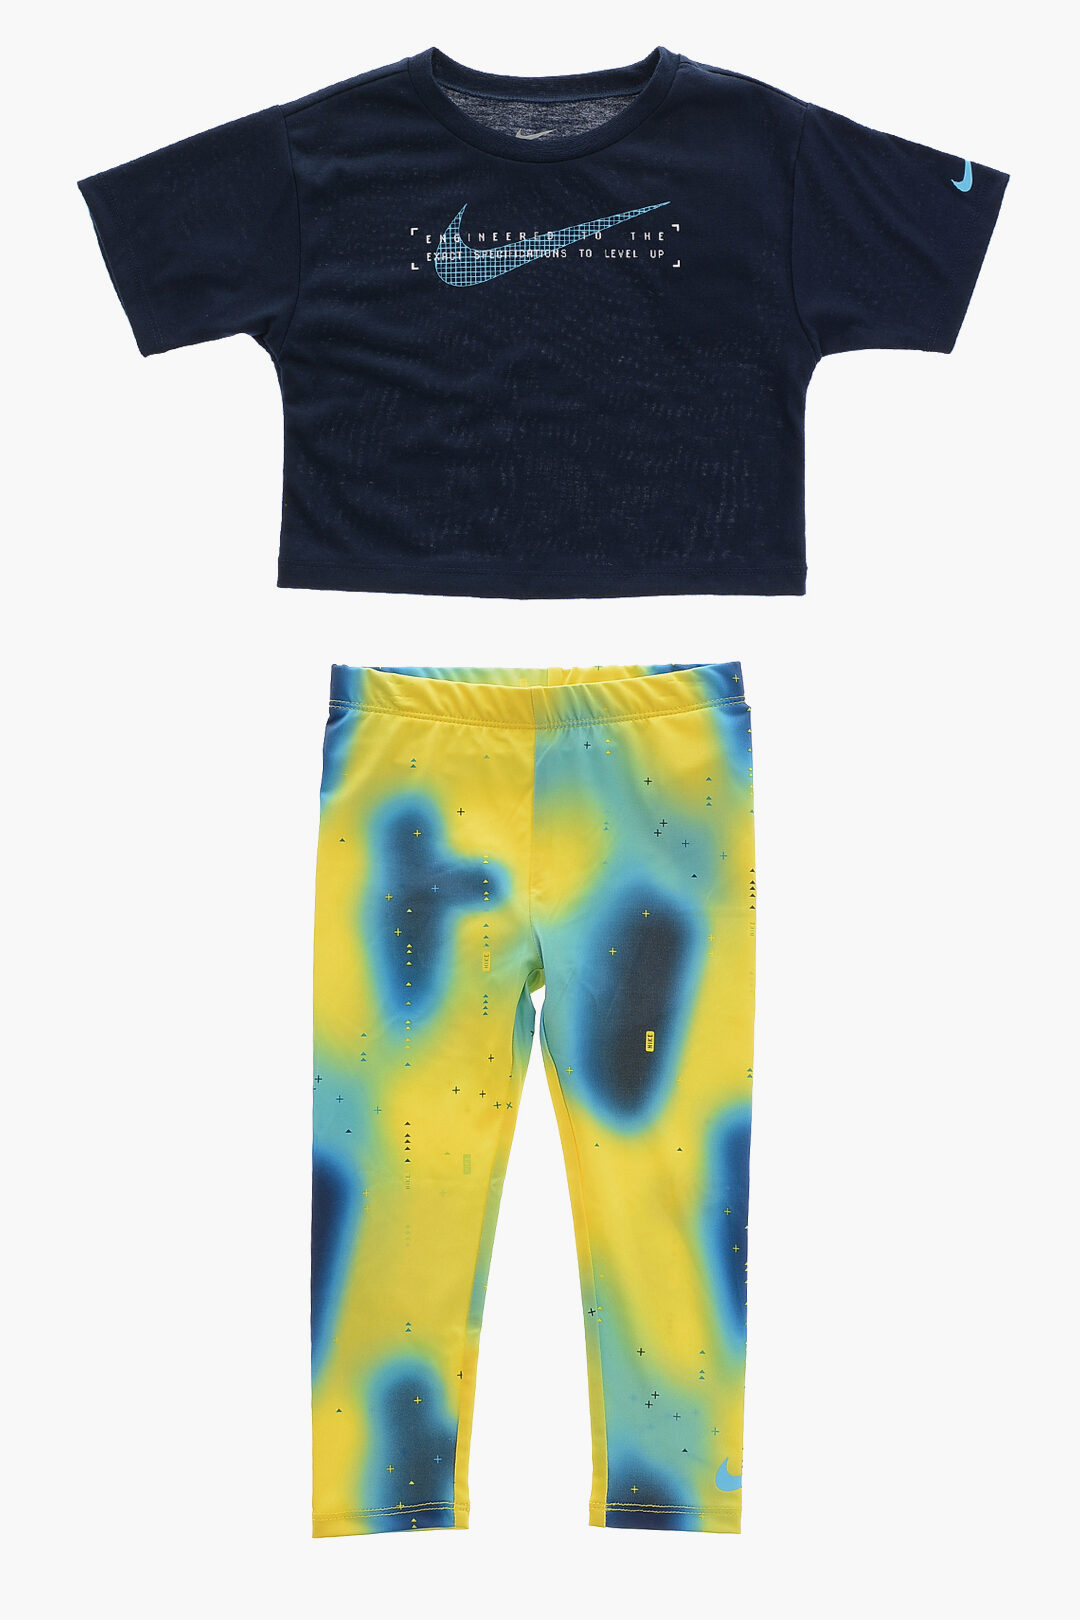 Nike Dri-FIT Toddler T-Shirt and Leggings Set